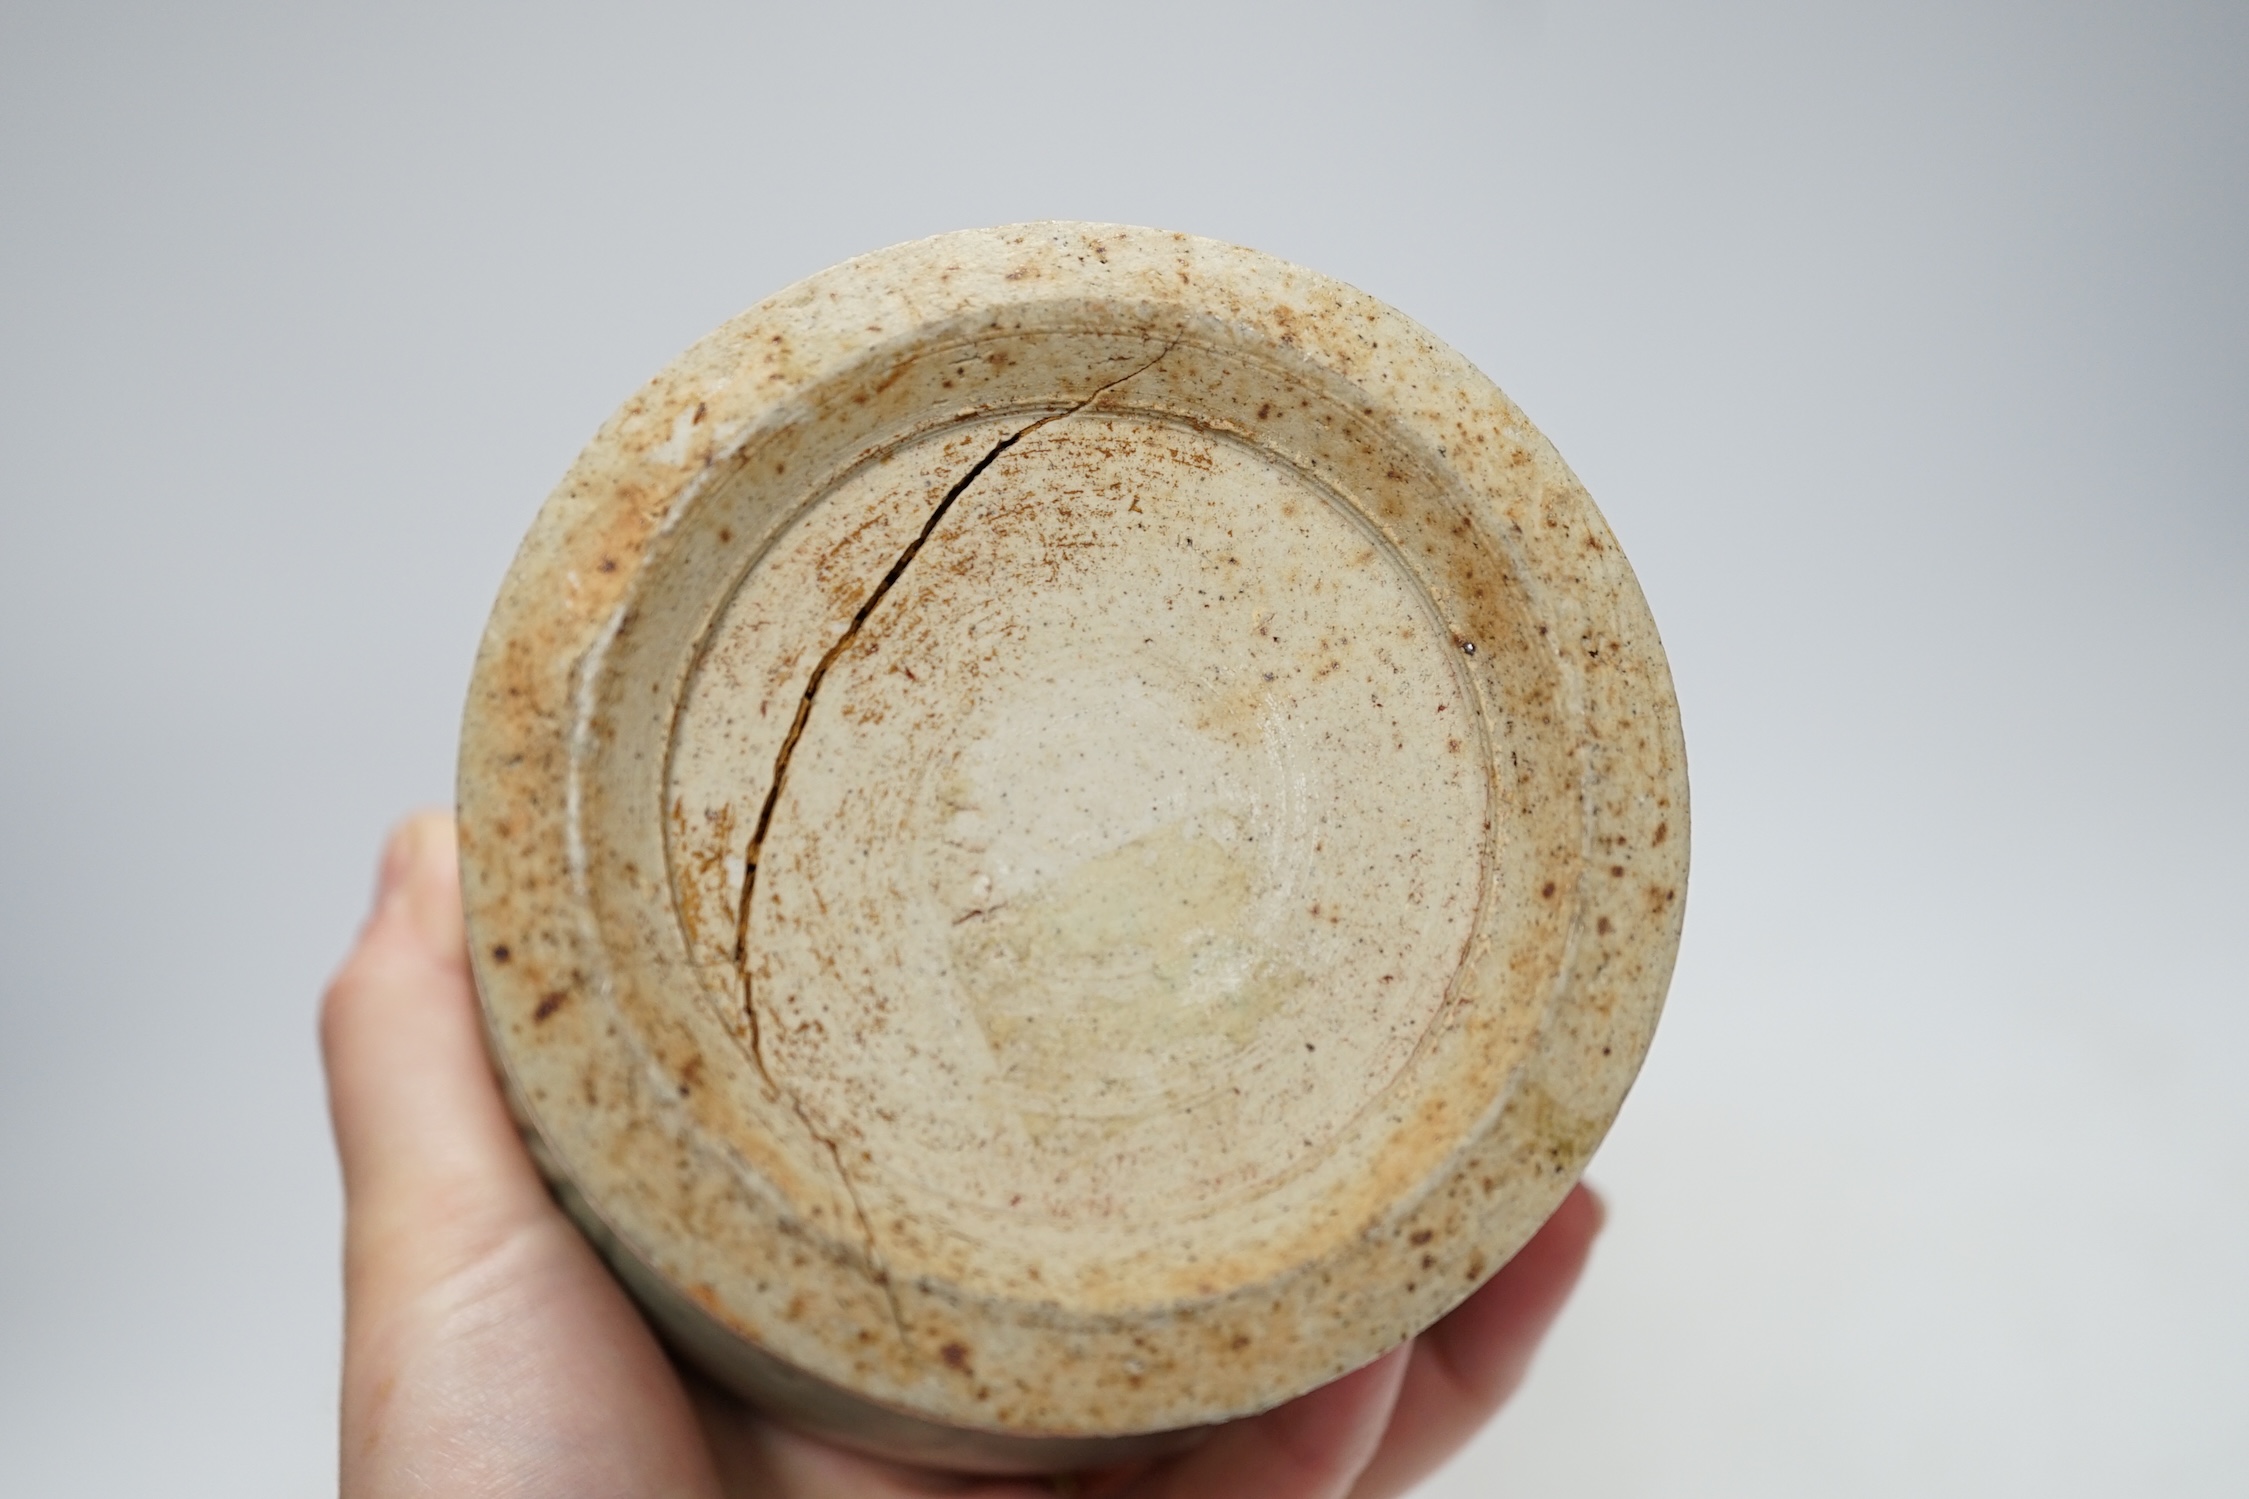 A Chinese celadon small yen-yen vase, probably Yuan dynasty, 23cm